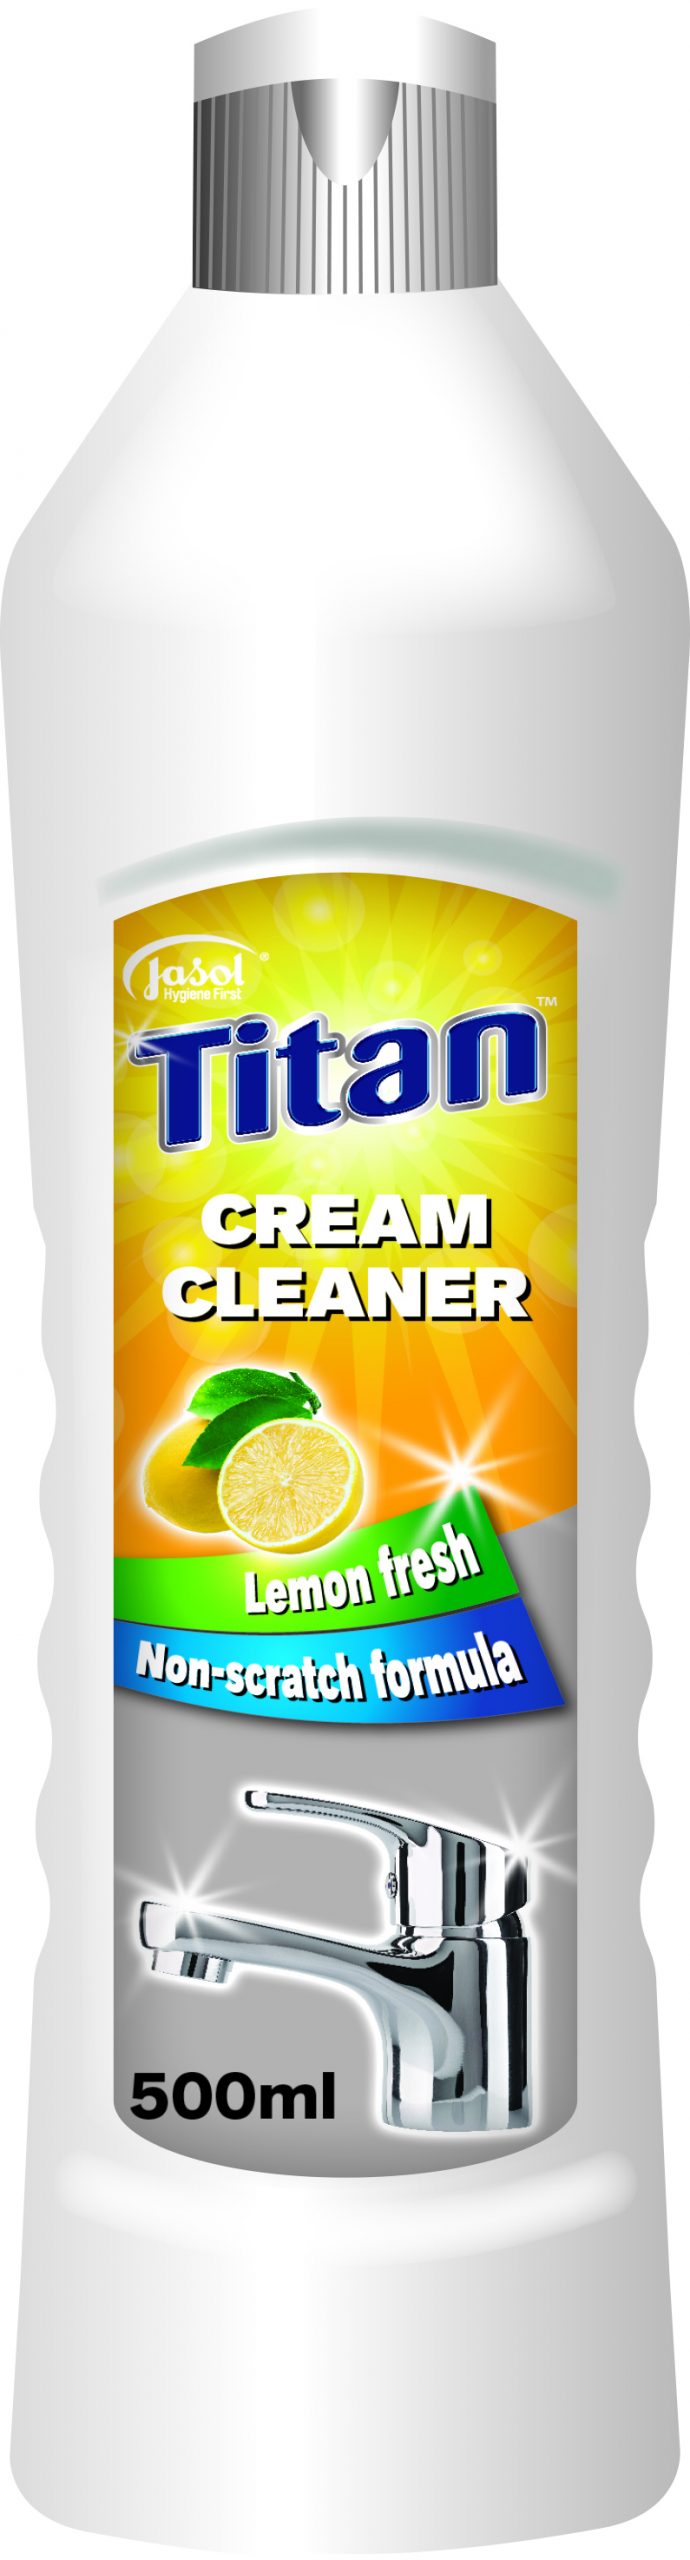 TITAN CREAM CLEANER